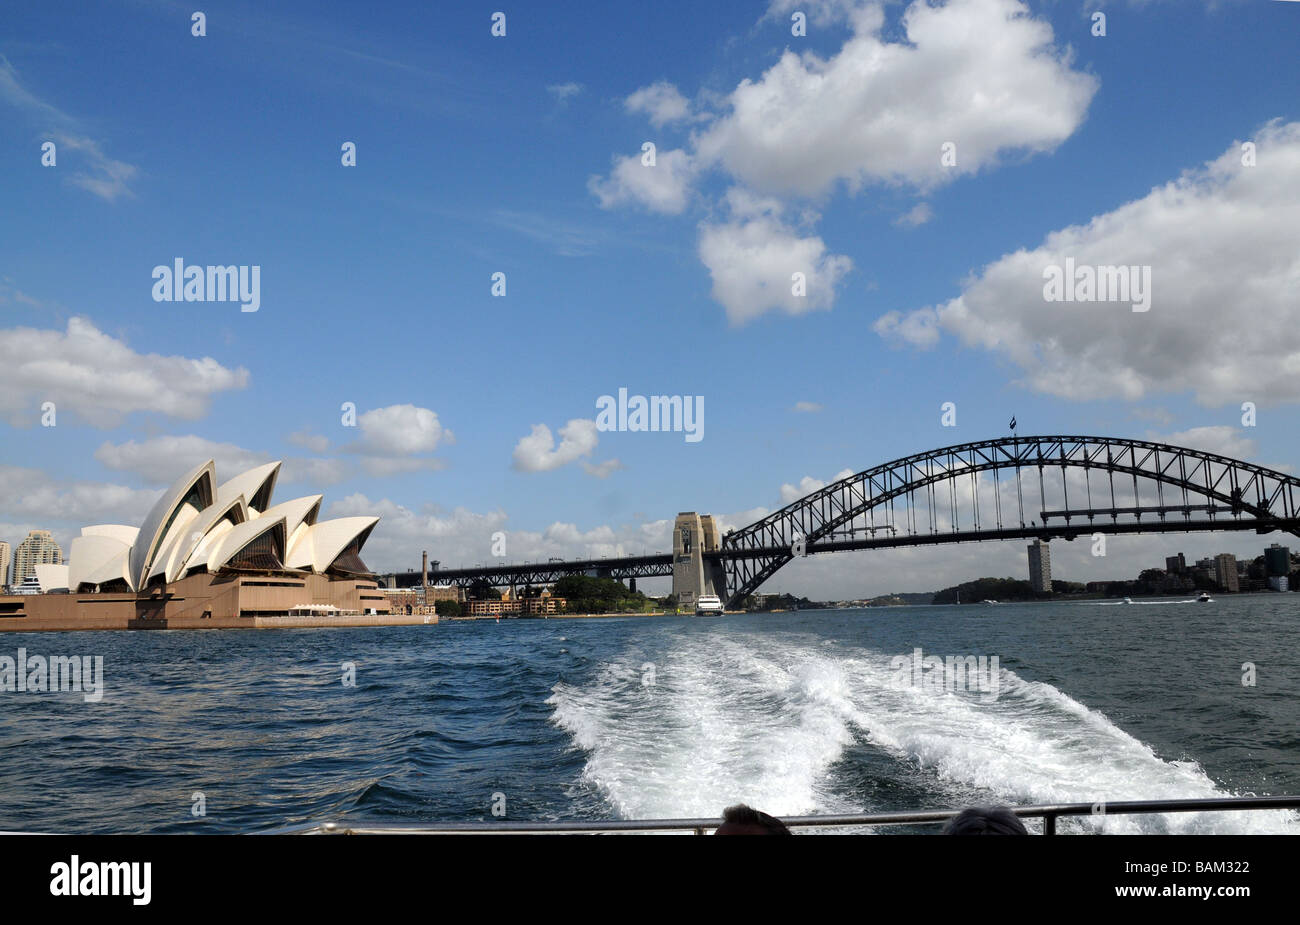 Sydney Australia, Ansicht von Sydney Bridge und Opera House.Icons of Australia, die Brücke im Jahr 1932, The Opera House im Jahr 2003 eröffnet. Stockfoto